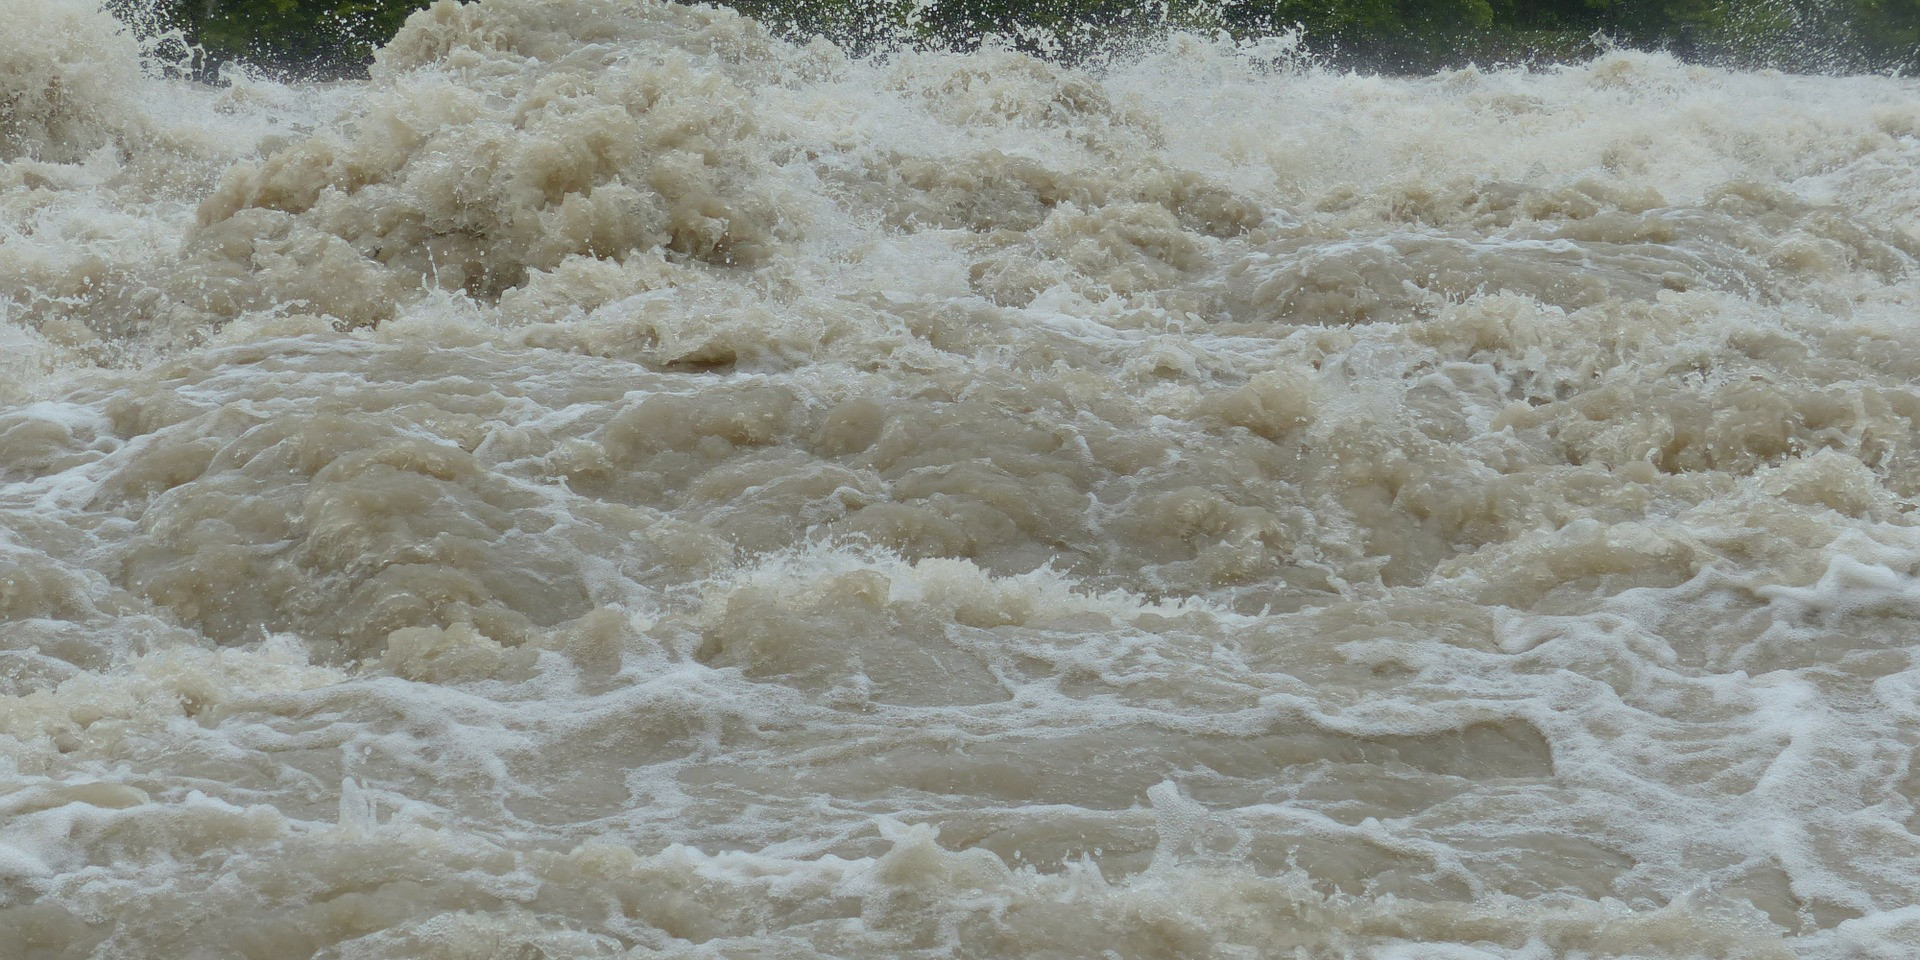 Hochwasser 